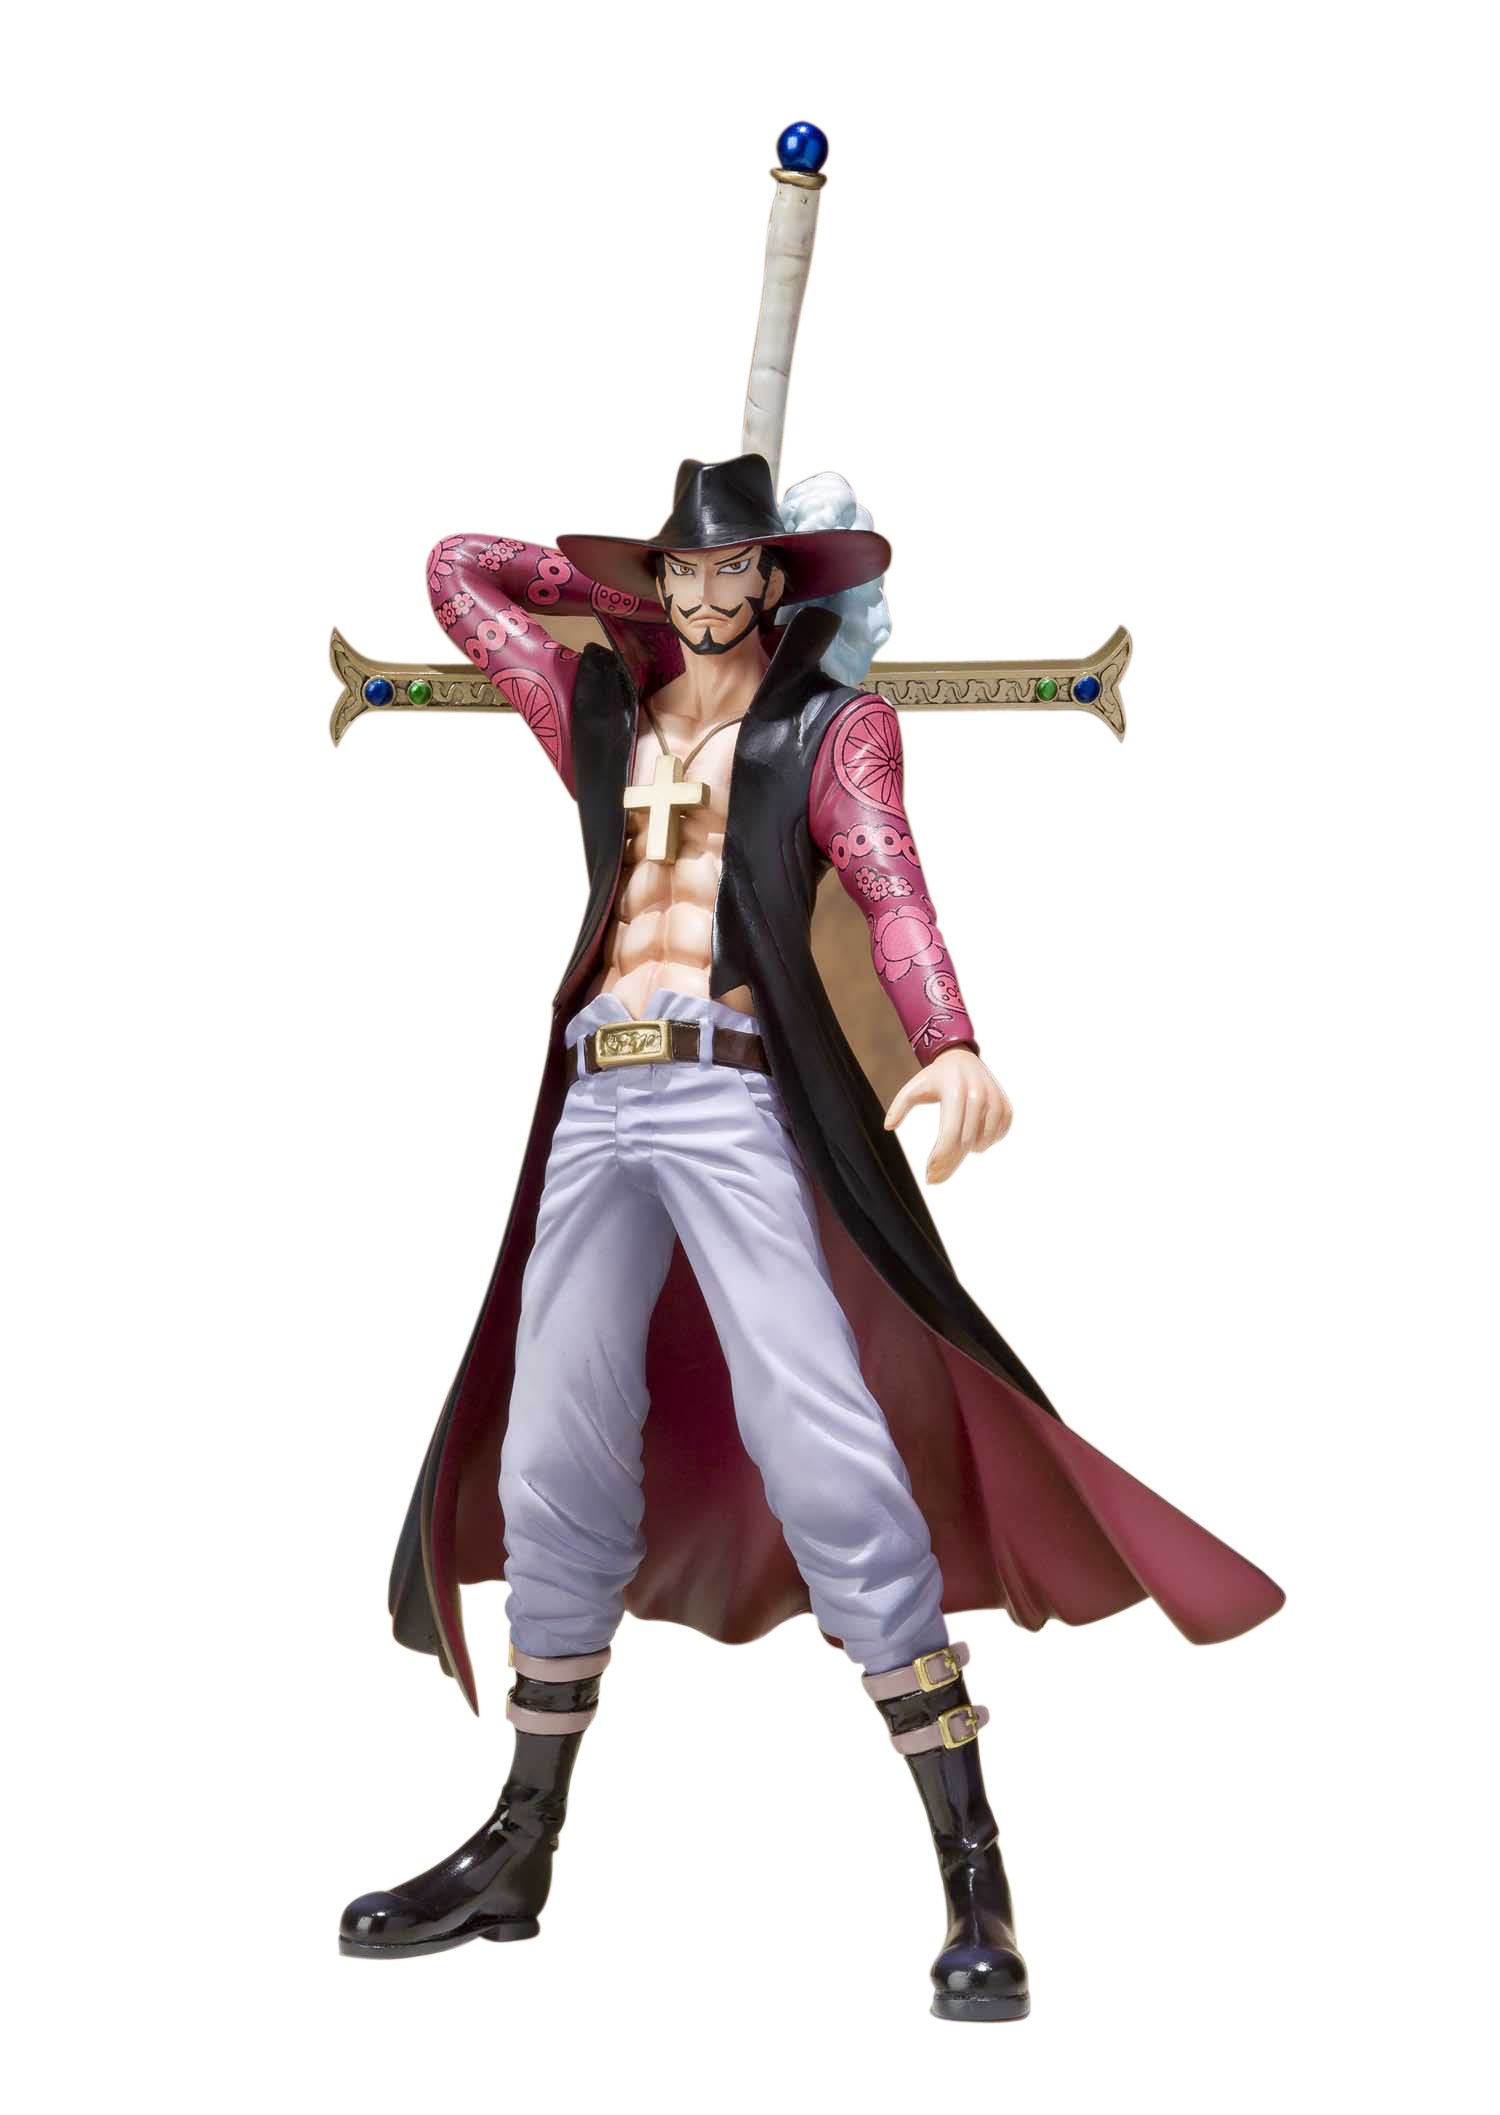 Mô hình One Piece tùy chọn mẫu Figure One Piece Luffy Zoro Mihawk Marco   Đồ chơi trẻ em